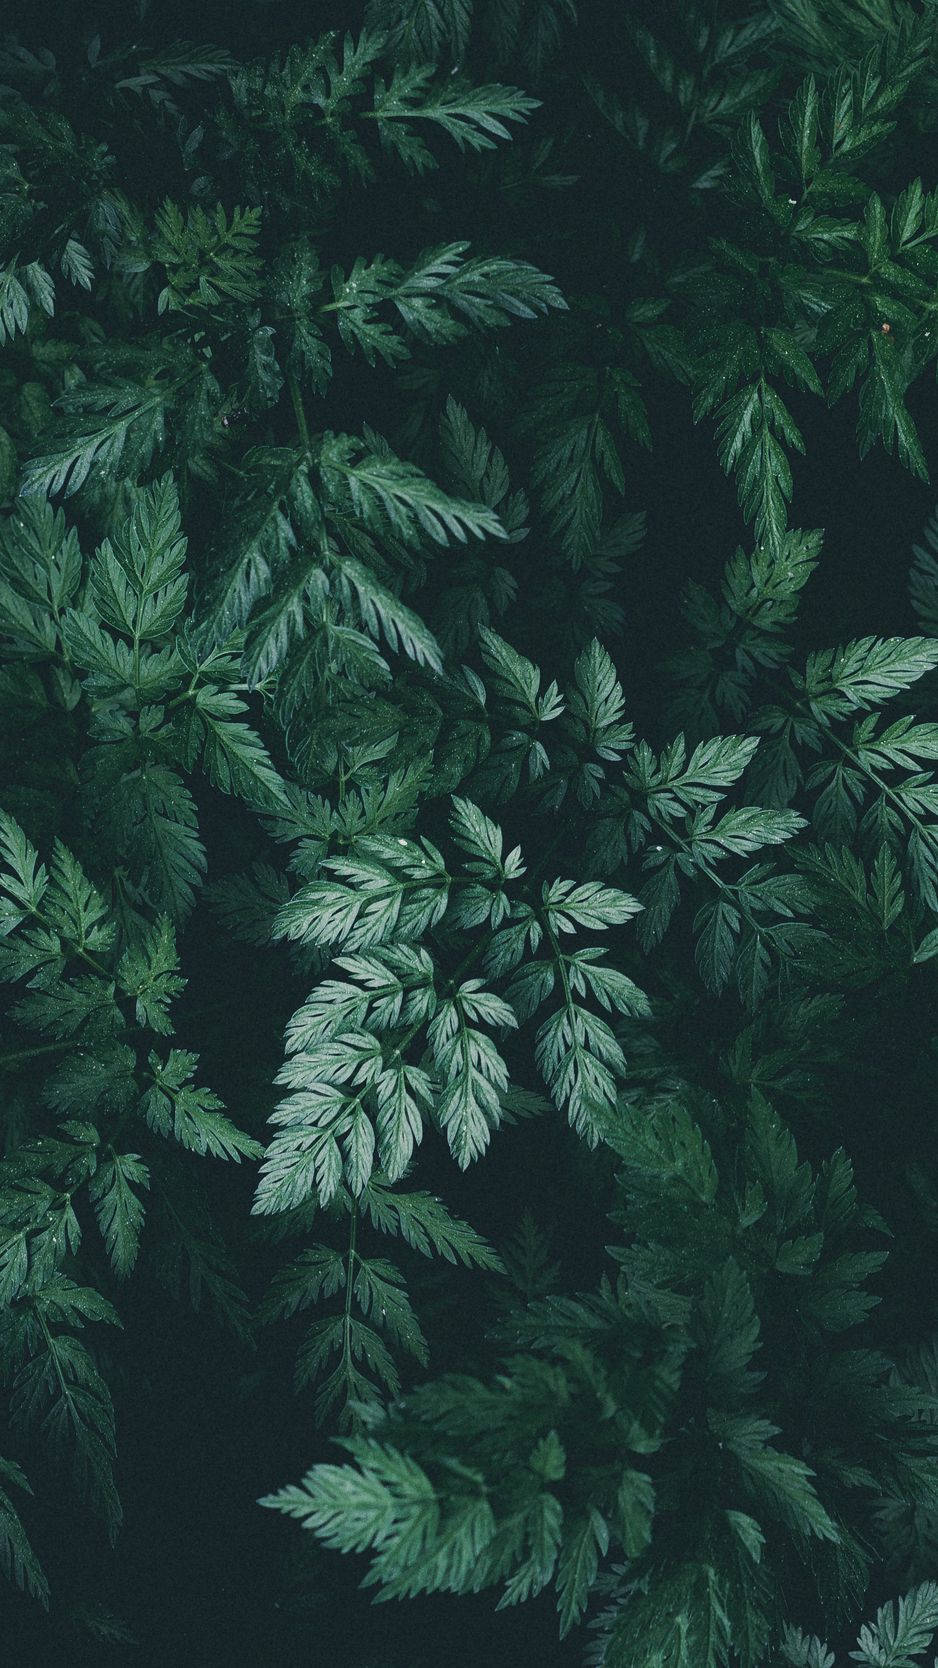 Vis din unikke stil med dette smukke, nature-inspirerede Plant Iphone tapet. Wallpaper